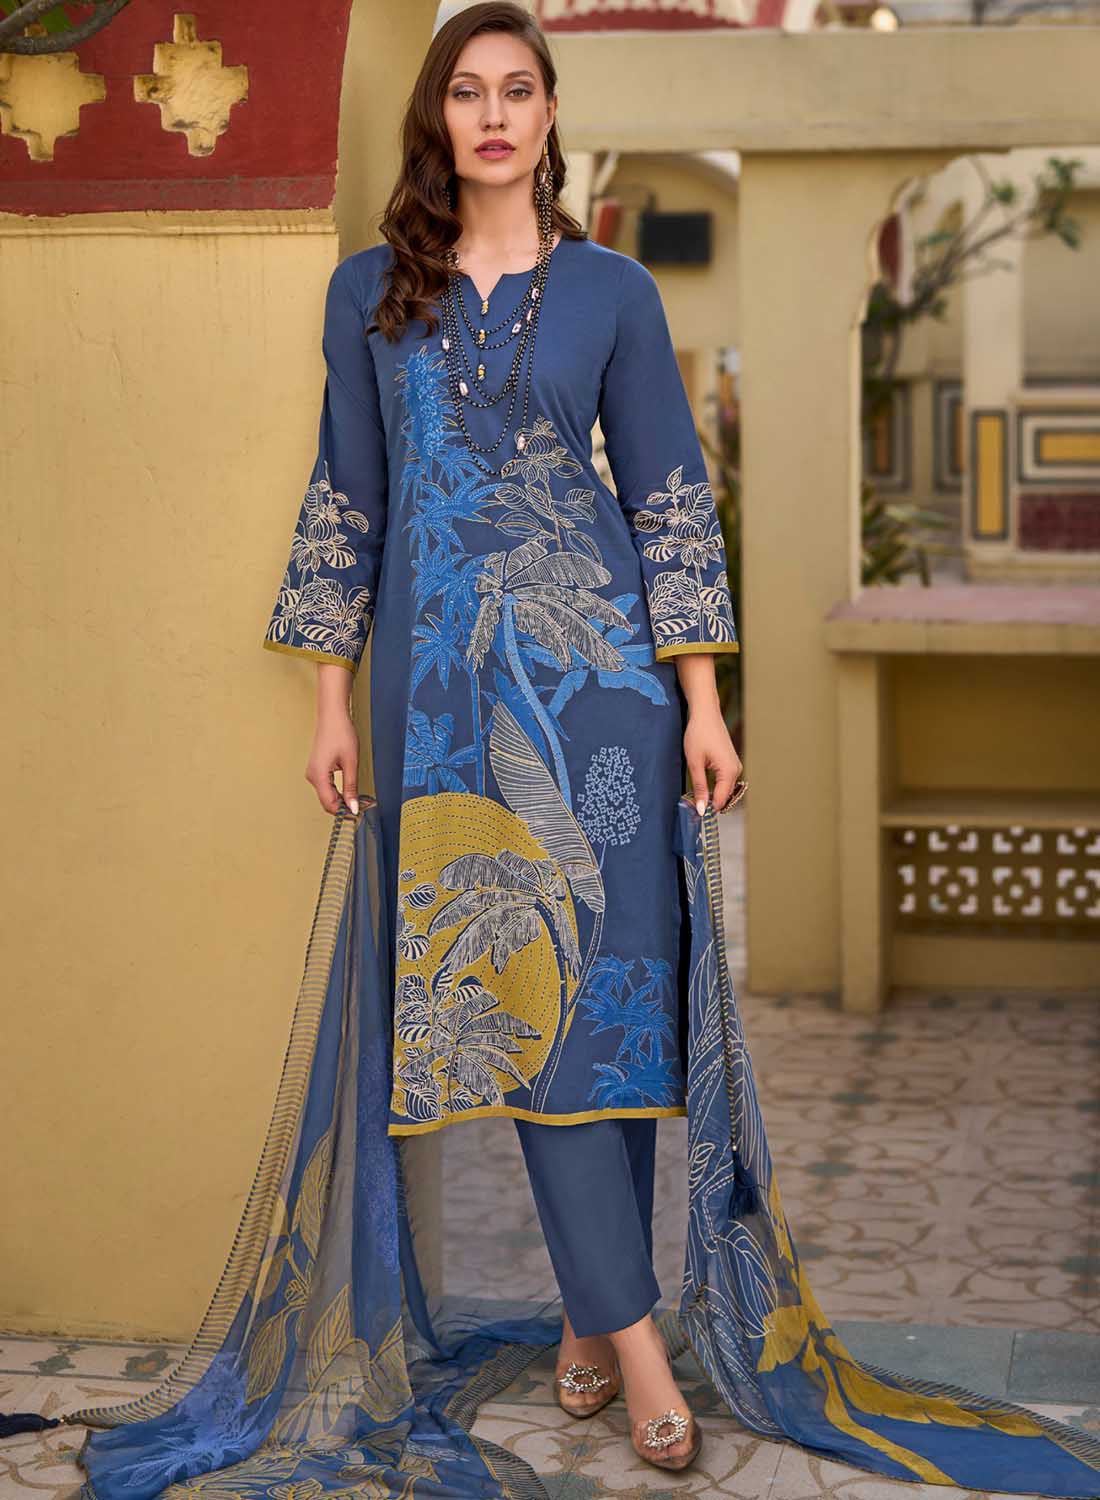 Blue Unstitched Pure Lawn Cotton Suit Dress Material for Women